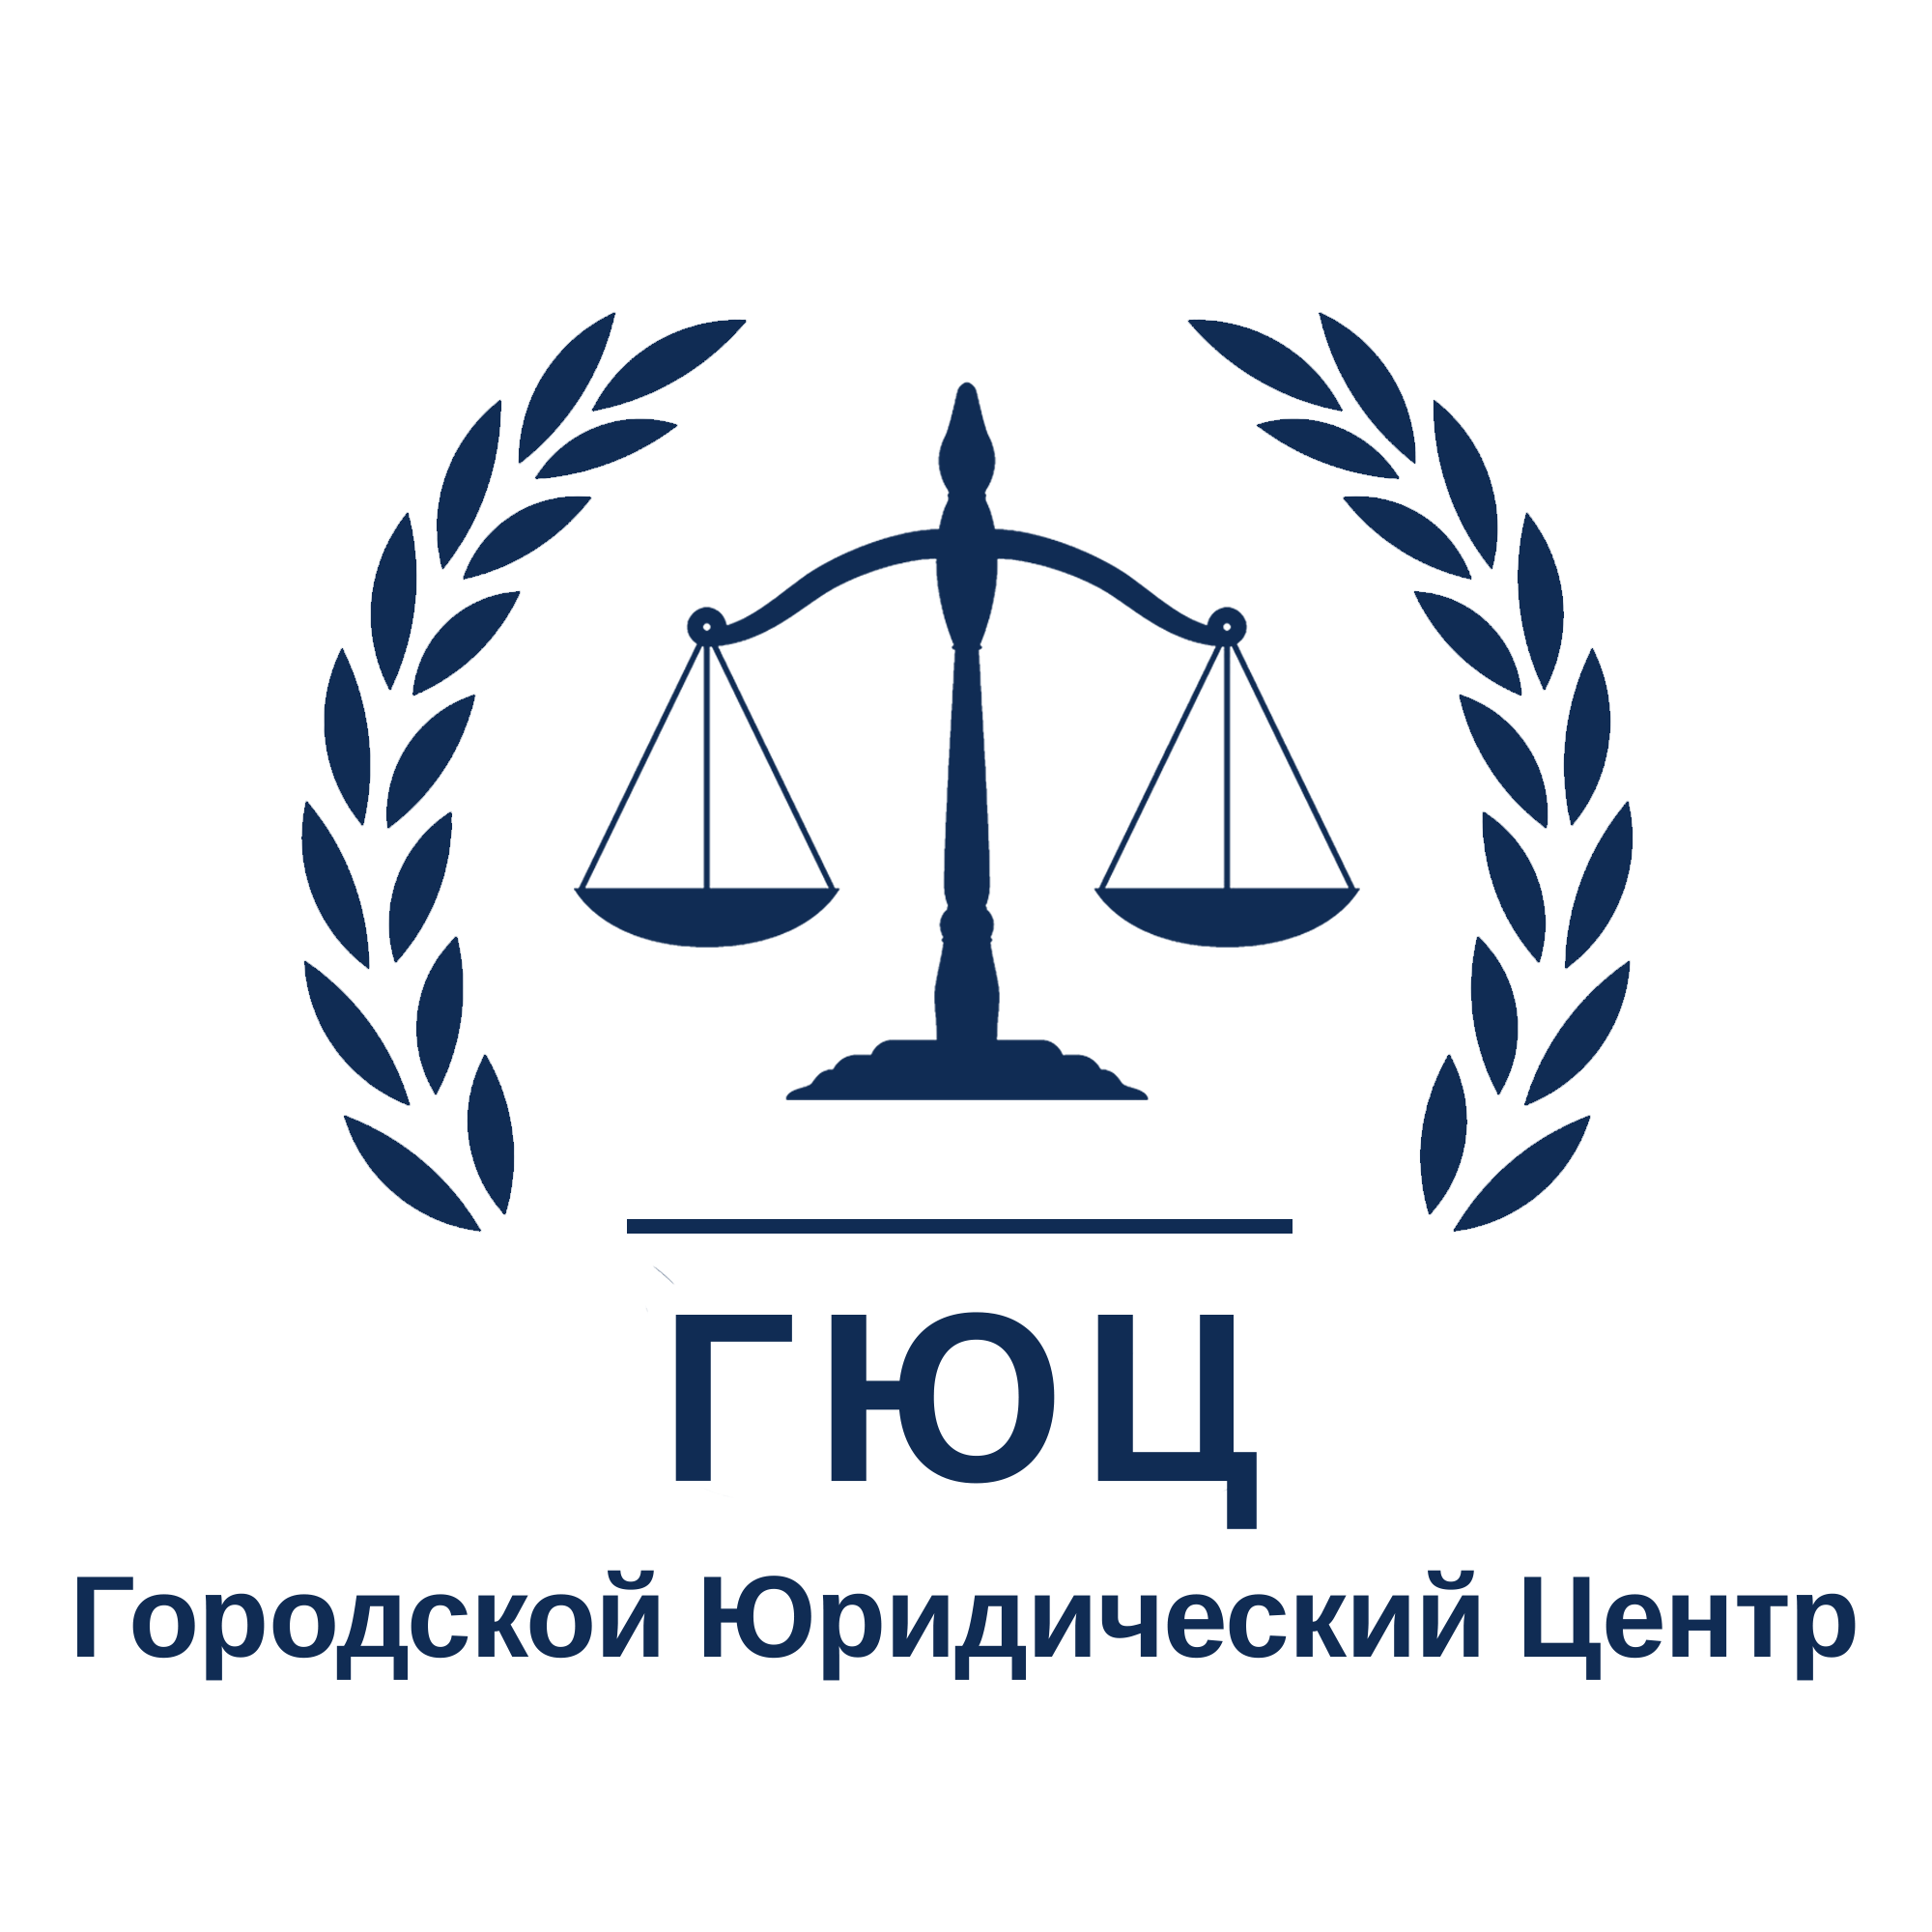 Городской юрист. Городской юридический центр логотип. Городской юридический центр Новосибирск. Городской юридический центр